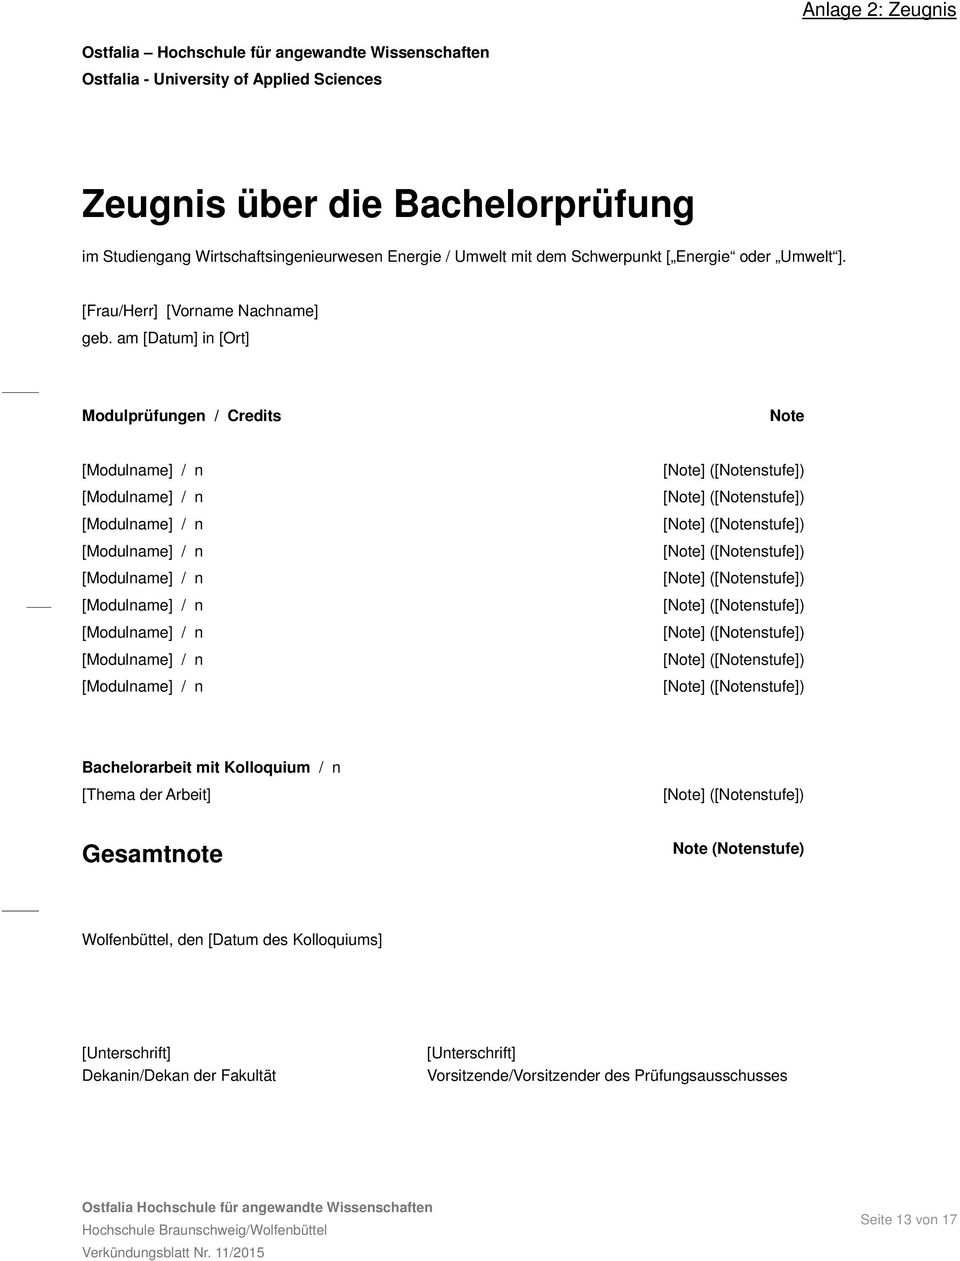 am [Datum] in [Ort] Modulprüfungen / Credits Note Bachelorarbeit mit Kolloquium / n [Thema der Arbeit] Gesamtnote Note (Notenstufe) Wolfenbüttel, den